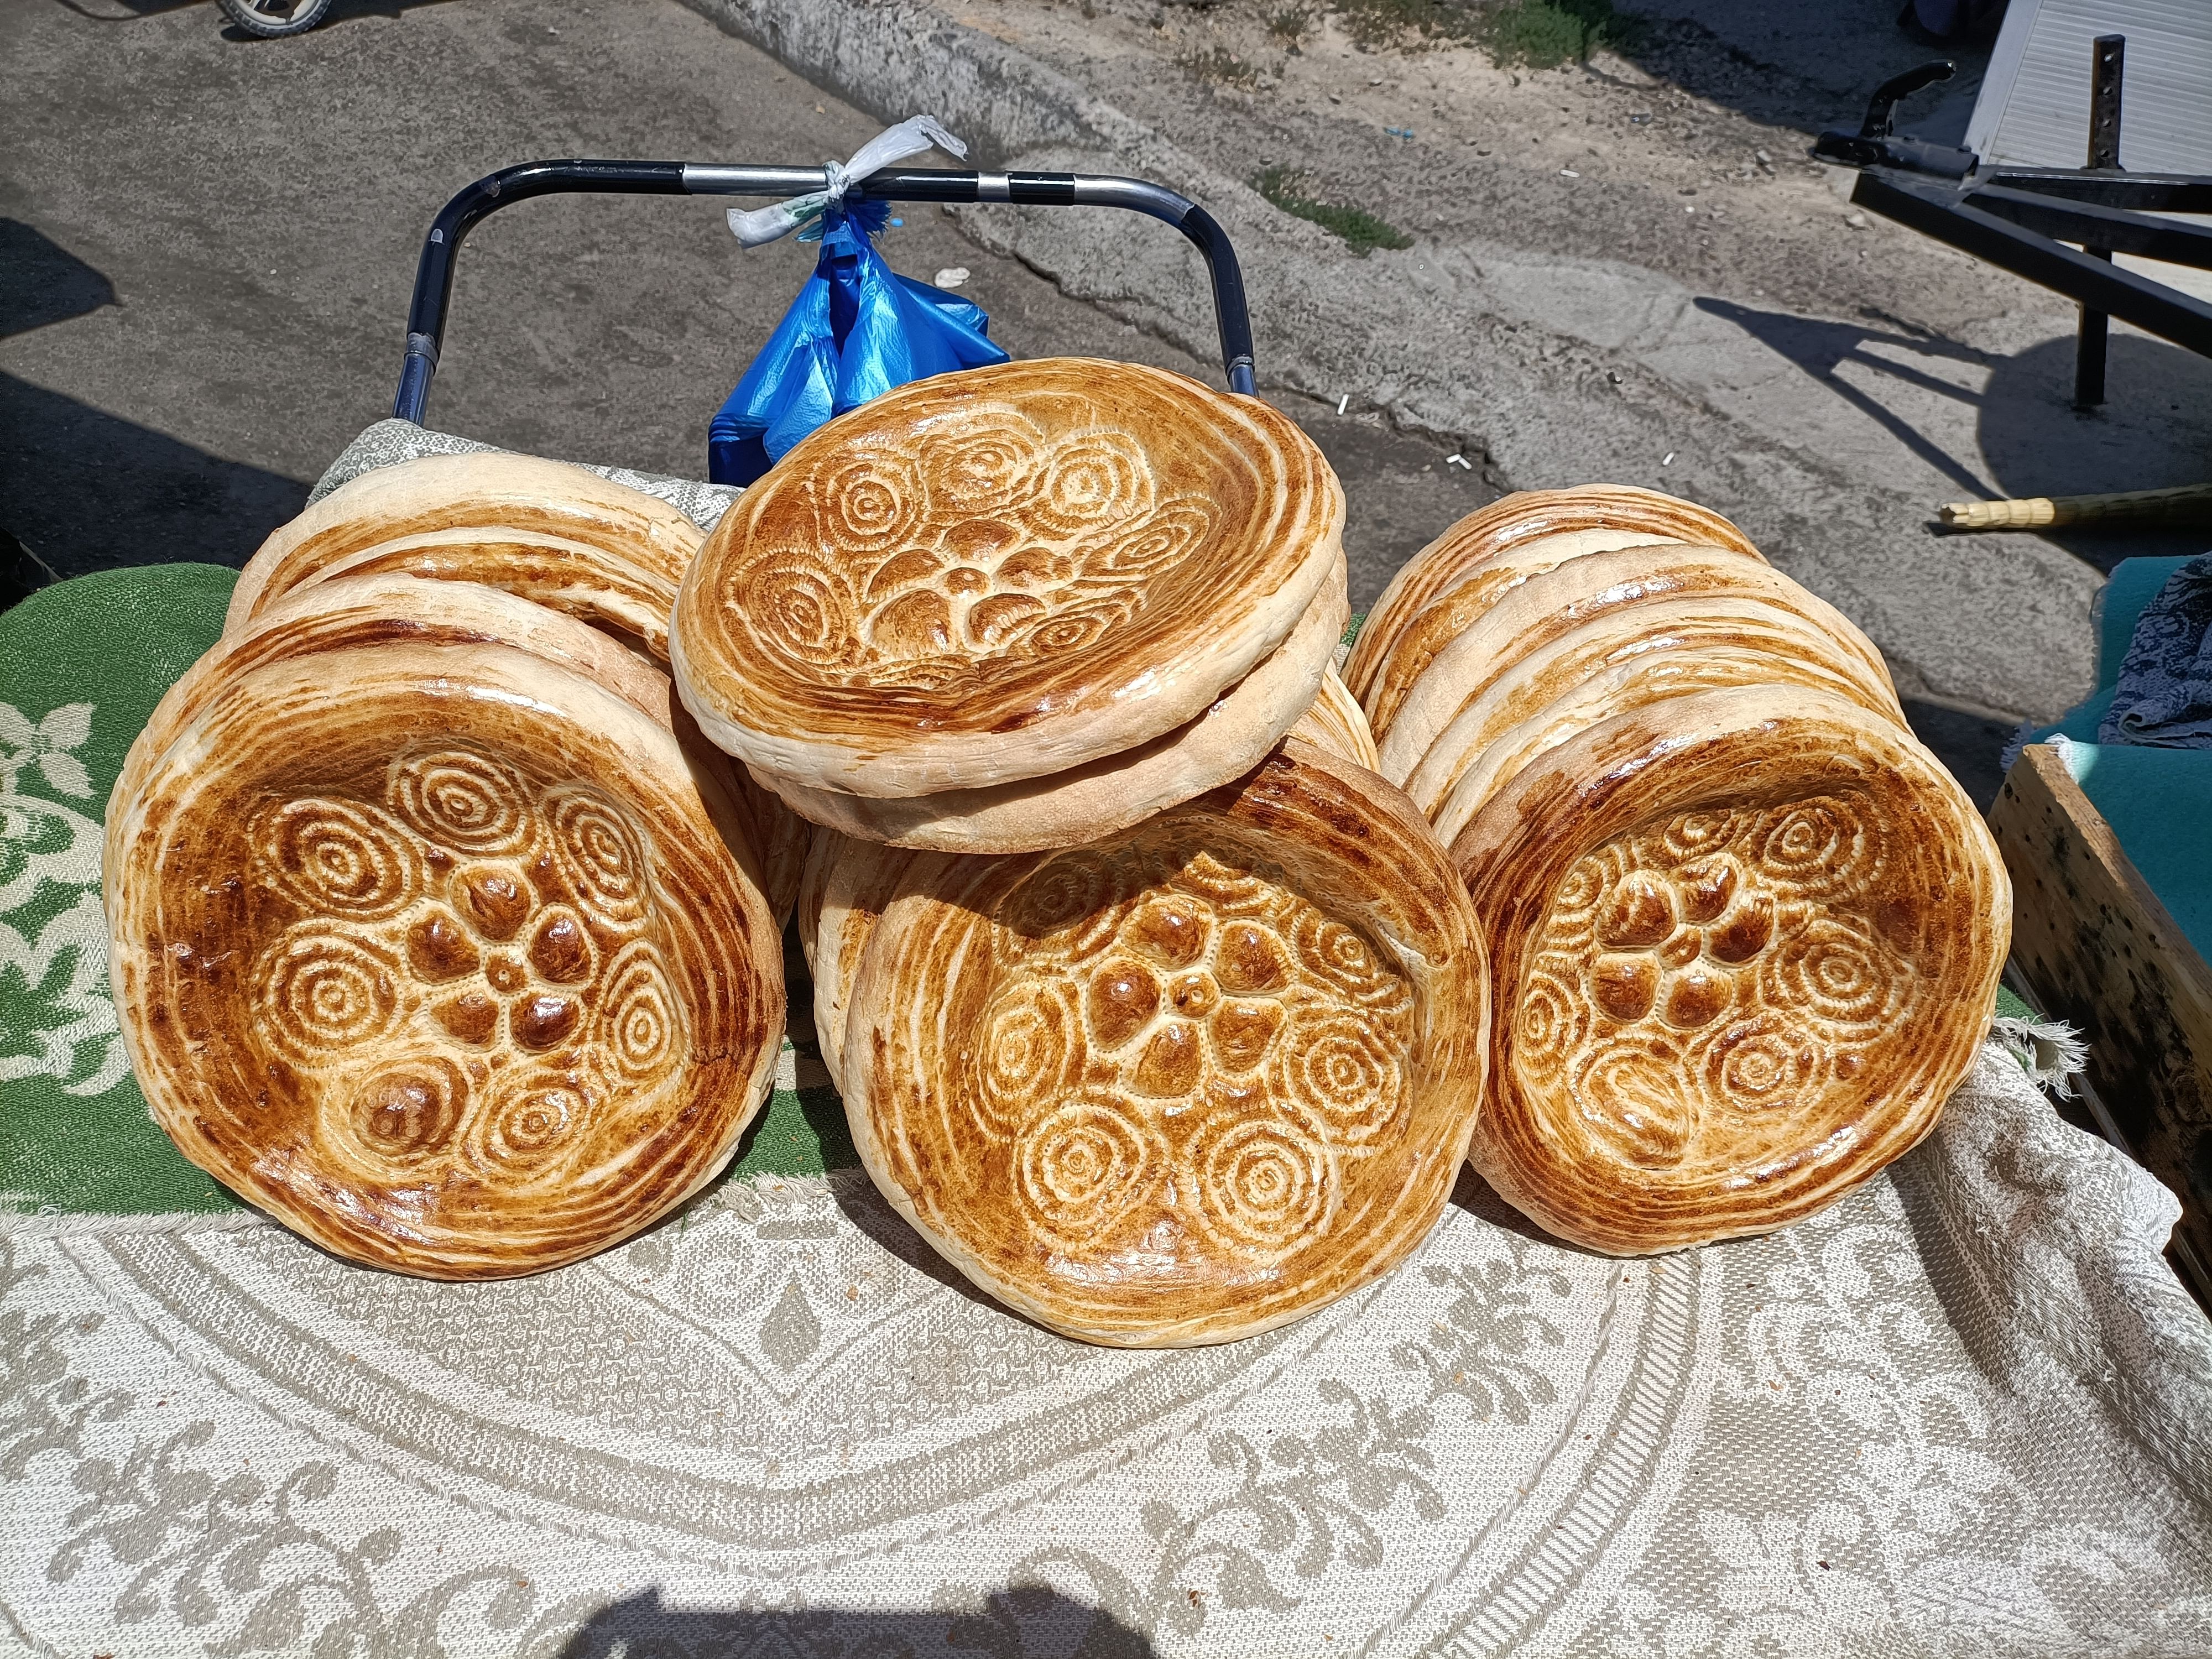 <div class="paragraphs"><p>Uzbek bread with floral patterns.&nbsp;</p></div>